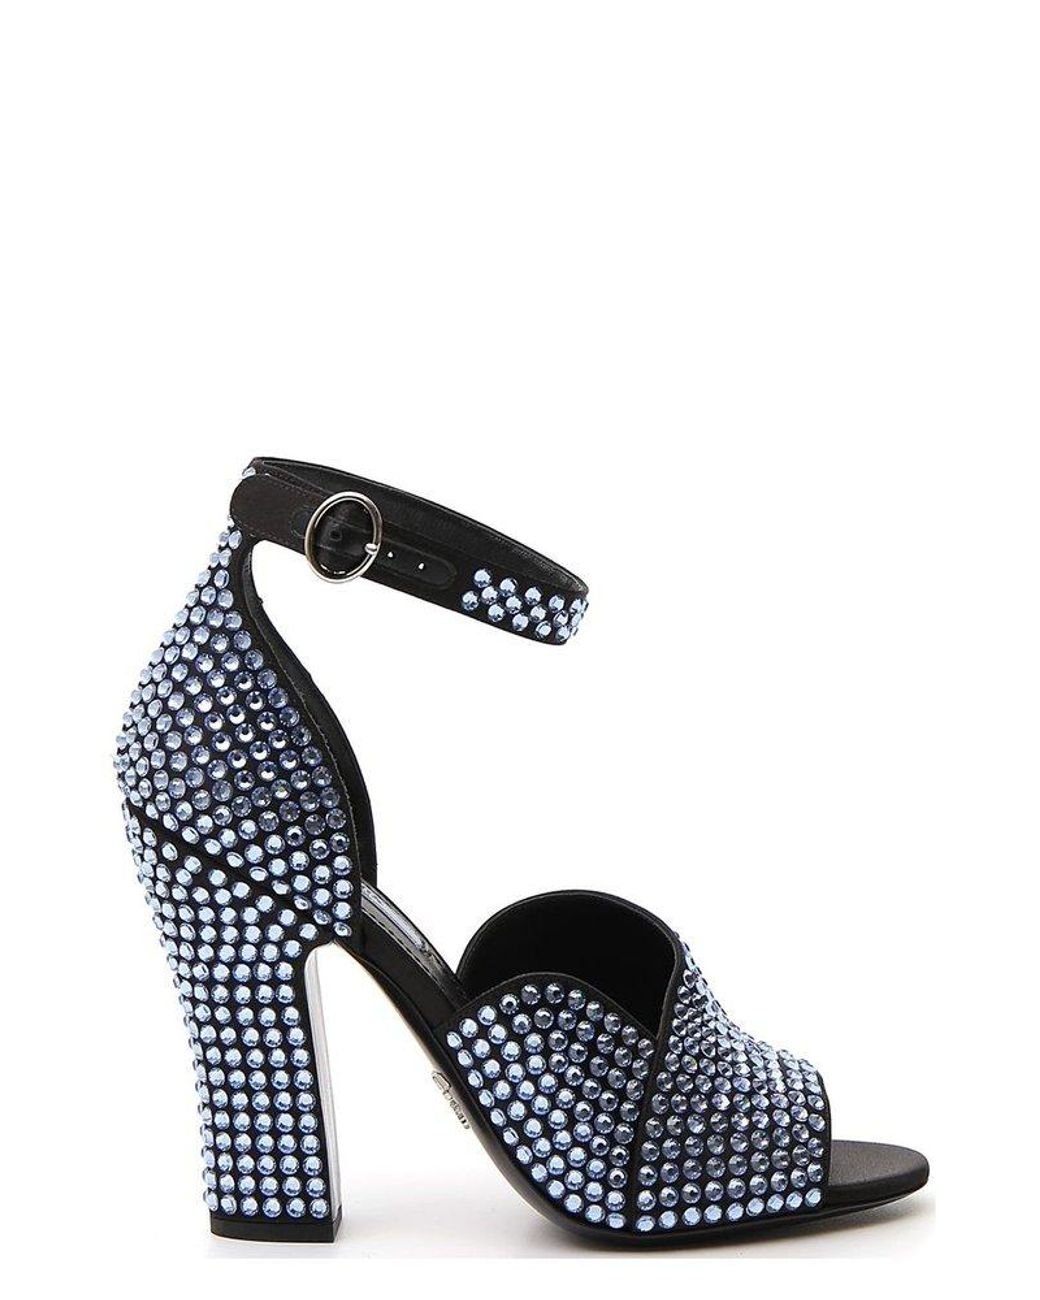 Crystal Satin Heeled Sandals With Crystals | PRADA